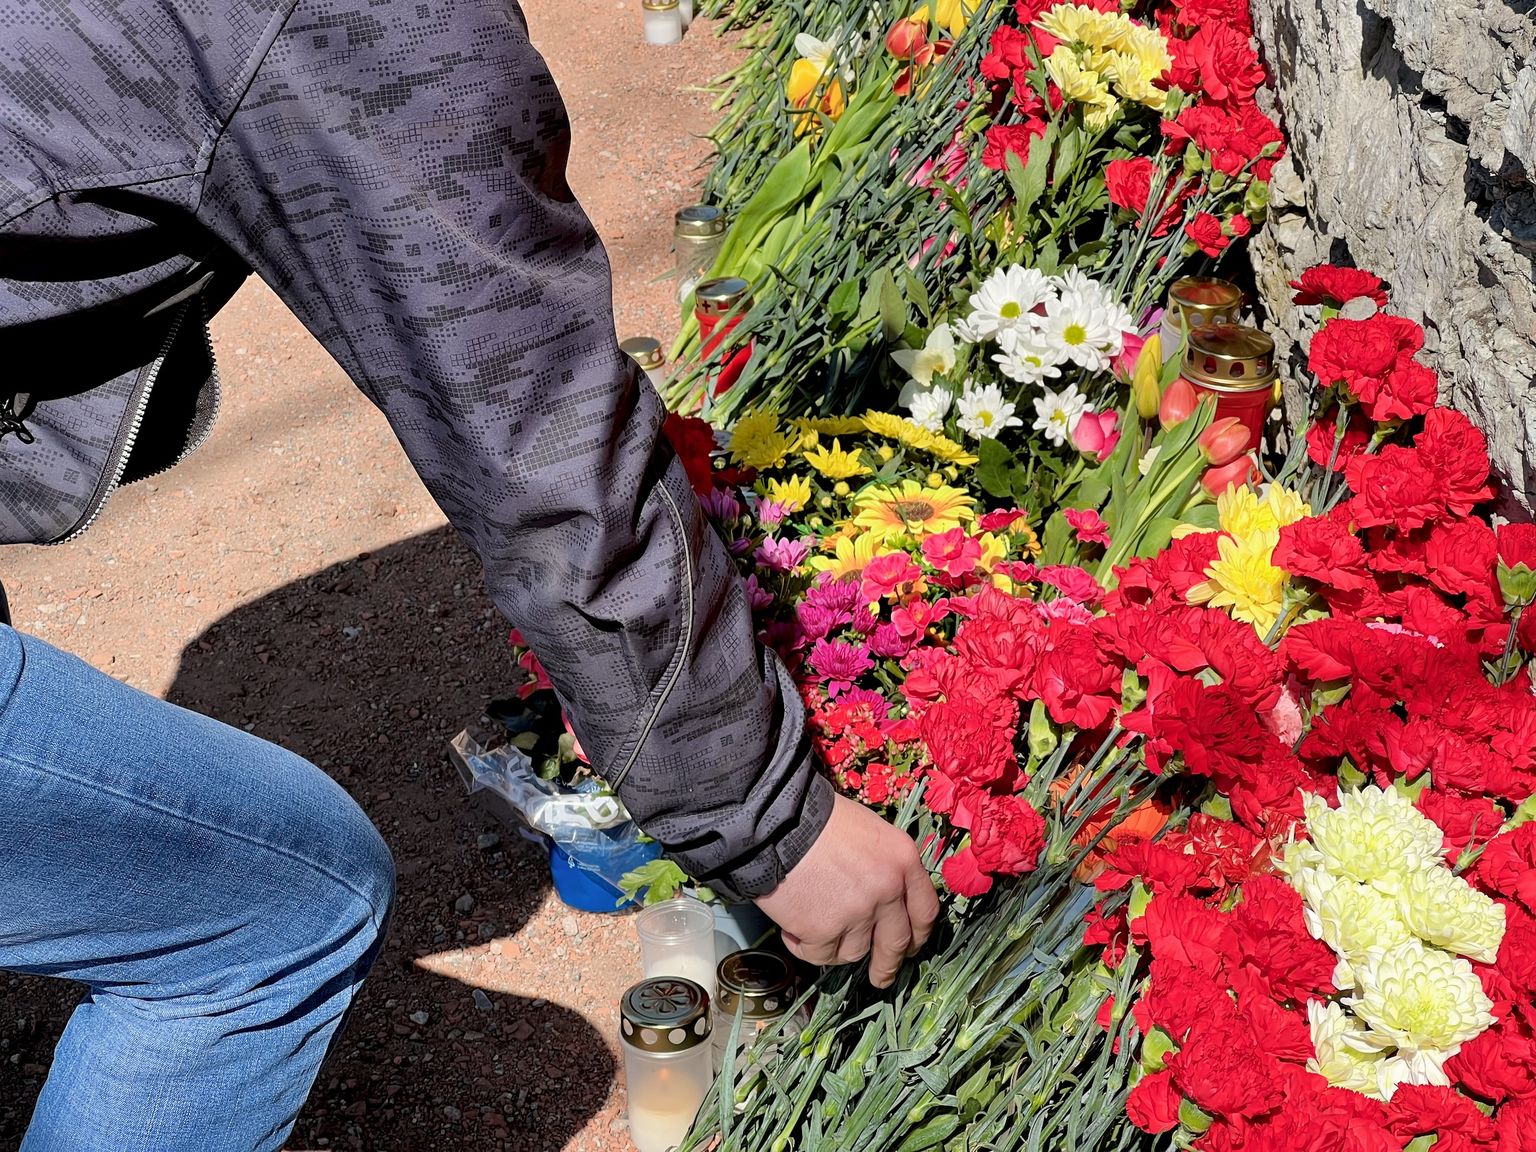 Мэр Нарвы Катри Райк сказала, что для нее допустимо тихо возложить цветы и почтить память близких.